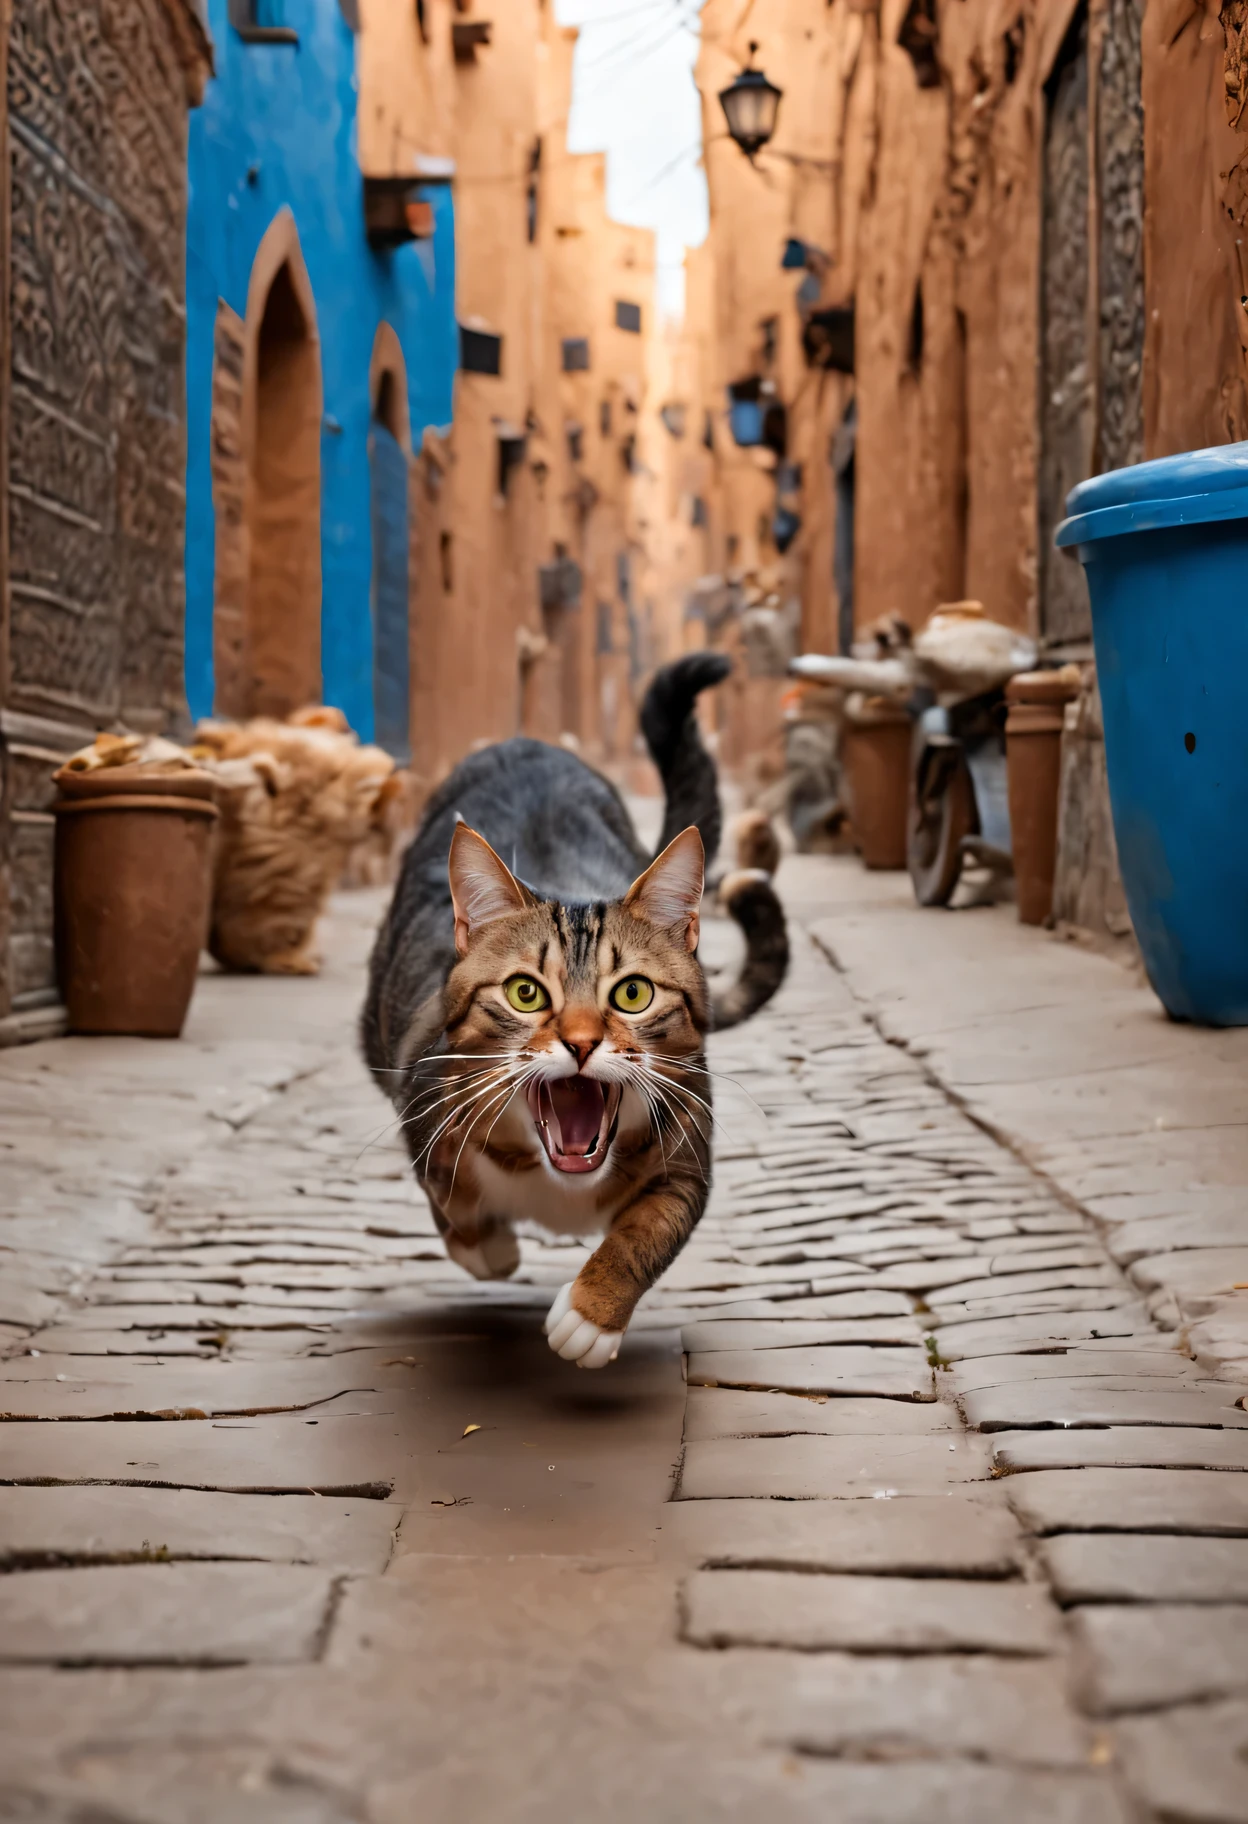 there is a แมว that is running down the street with Moroccan people chasing it, awesome แมว, ภาพถ่ายที่สมจริงมาก, ทอมกับเจอร์รี่ในชีวิตจริง, happy แมว, แมว attacking Marrakech, funny แมว, running แมว, !!! แมว!!!, !!!! แมว!!!!, ภาพถ่ายสมจริงมาก, รูปภาพชีวิตจริง, ภาพที่สมจริงเป็นพิเศษ, ภาพถ่ายจริงไฮเปอร์, ปลาซาร์ดีนที่ถูกขโมยเข้าปาก, ภาพเกินจริง